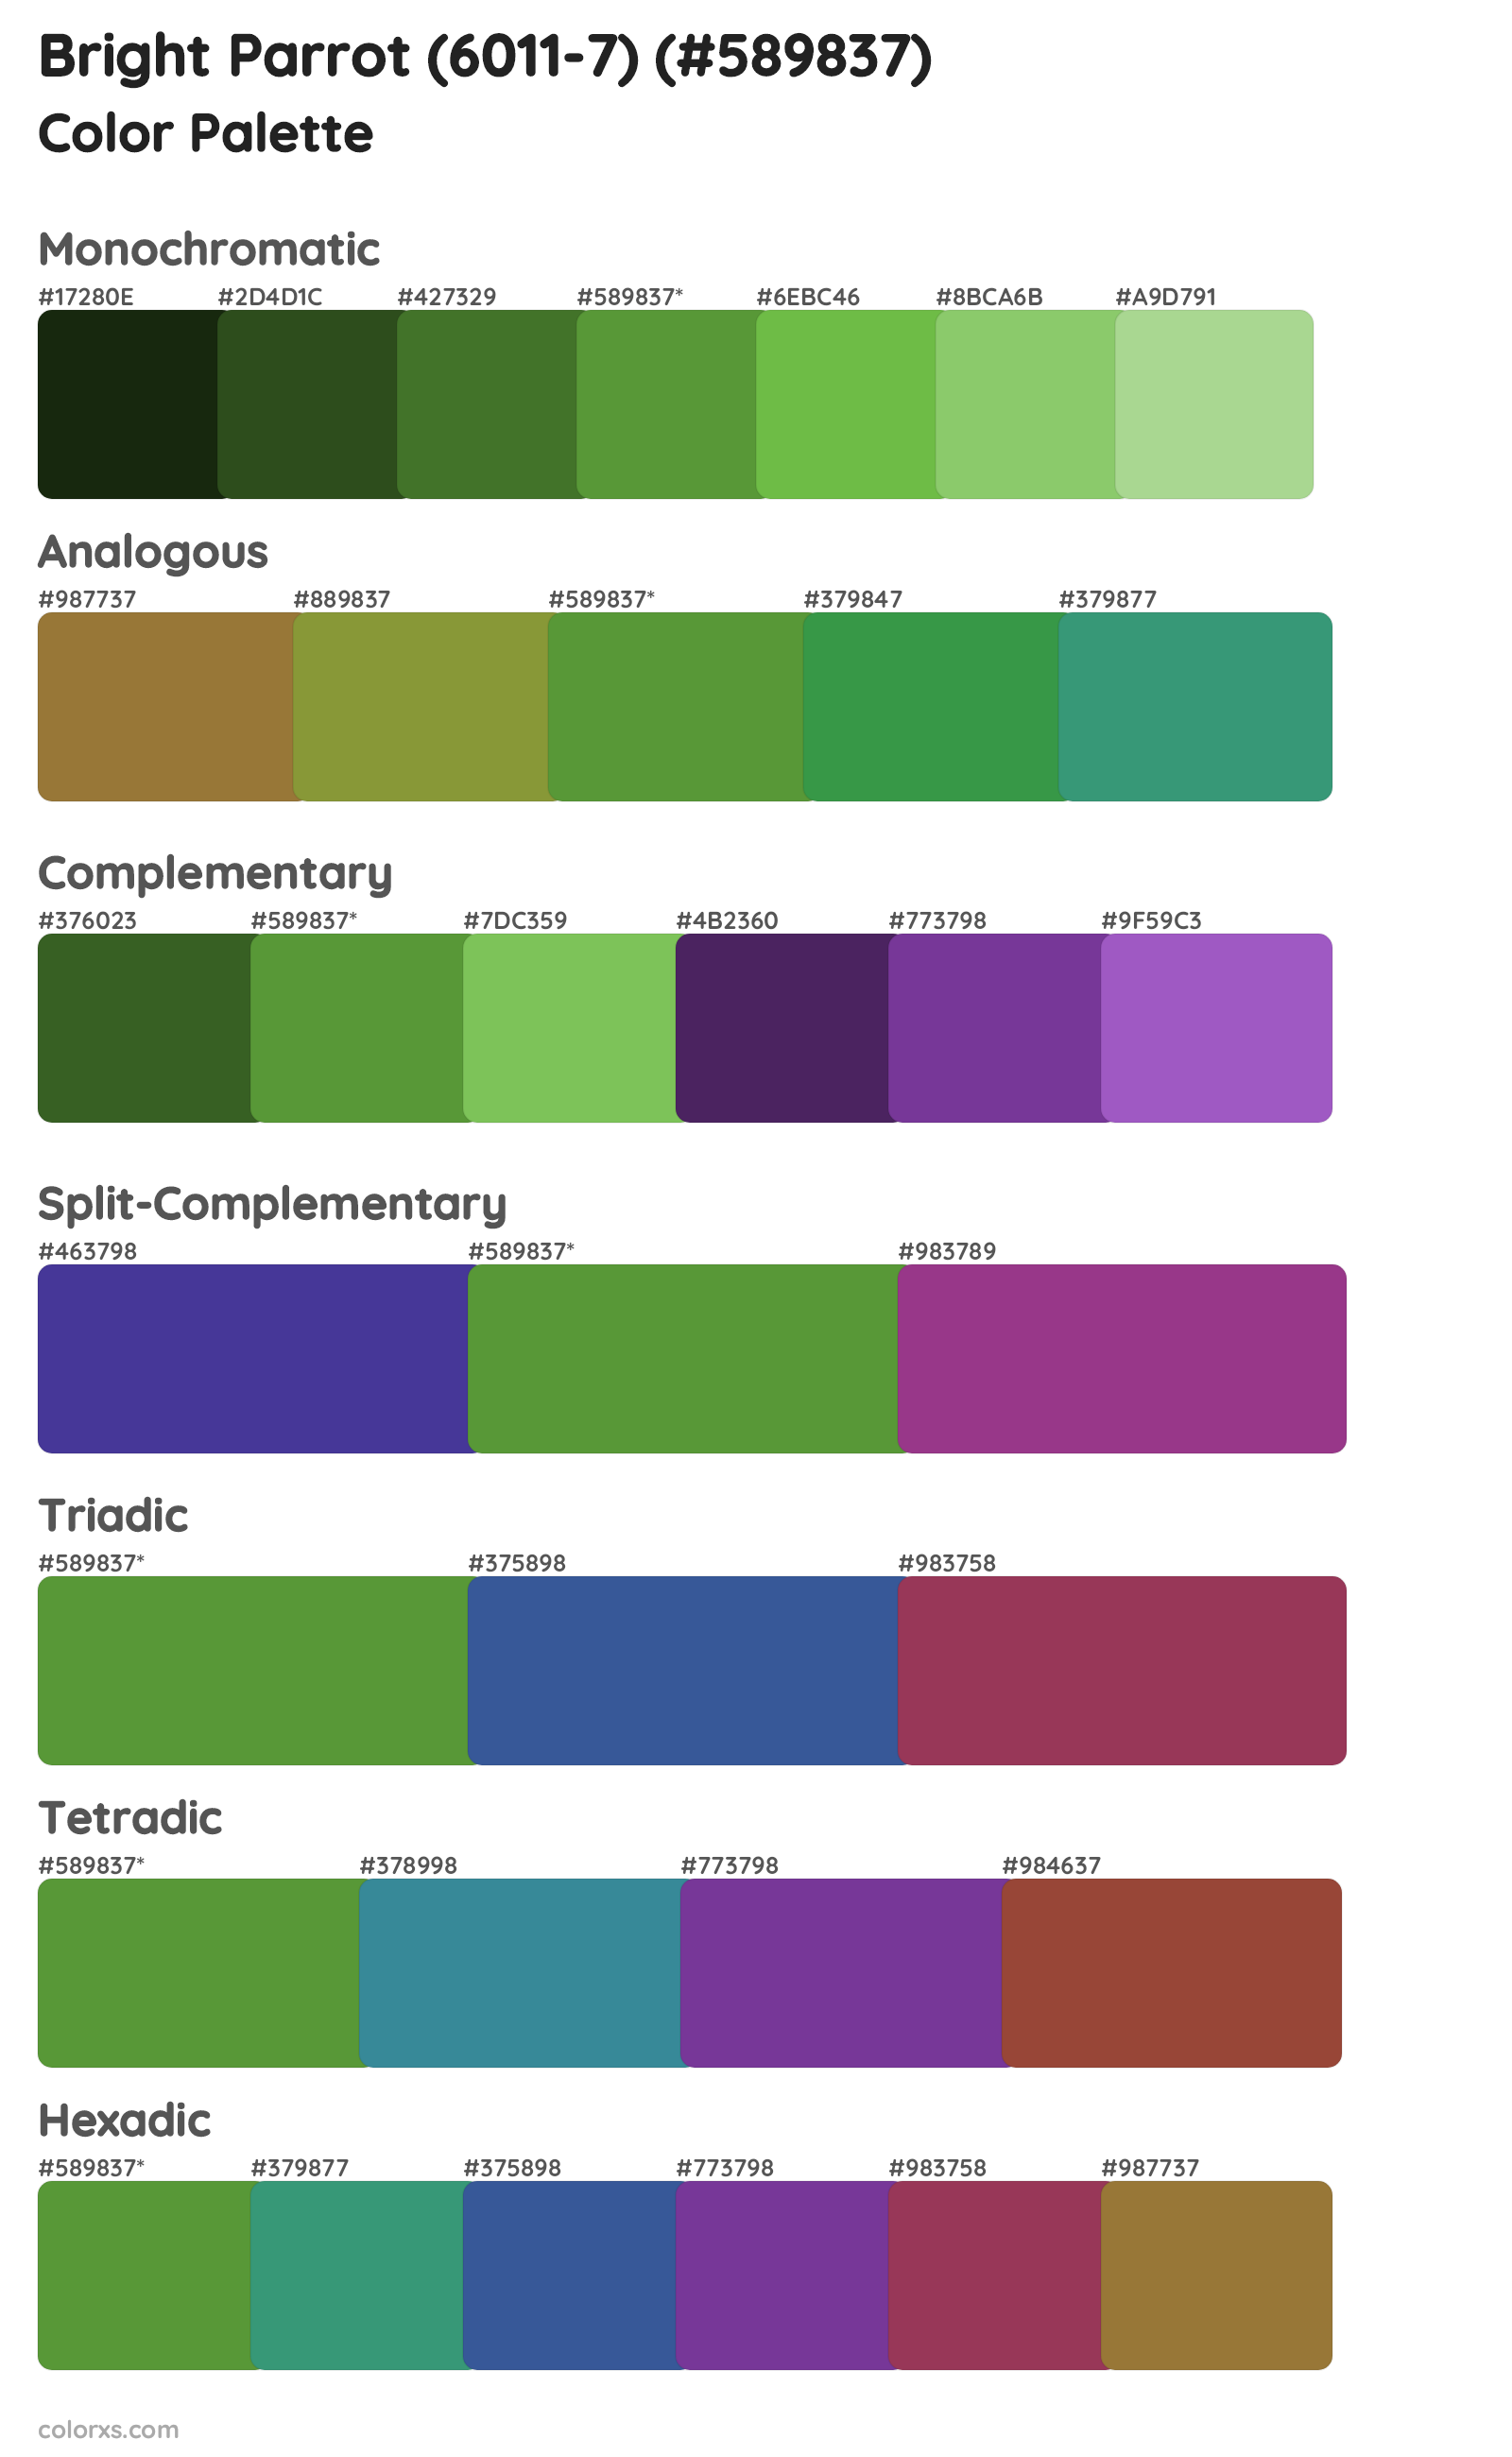 Bright Parrot (6011-7) Color Scheme Palettes